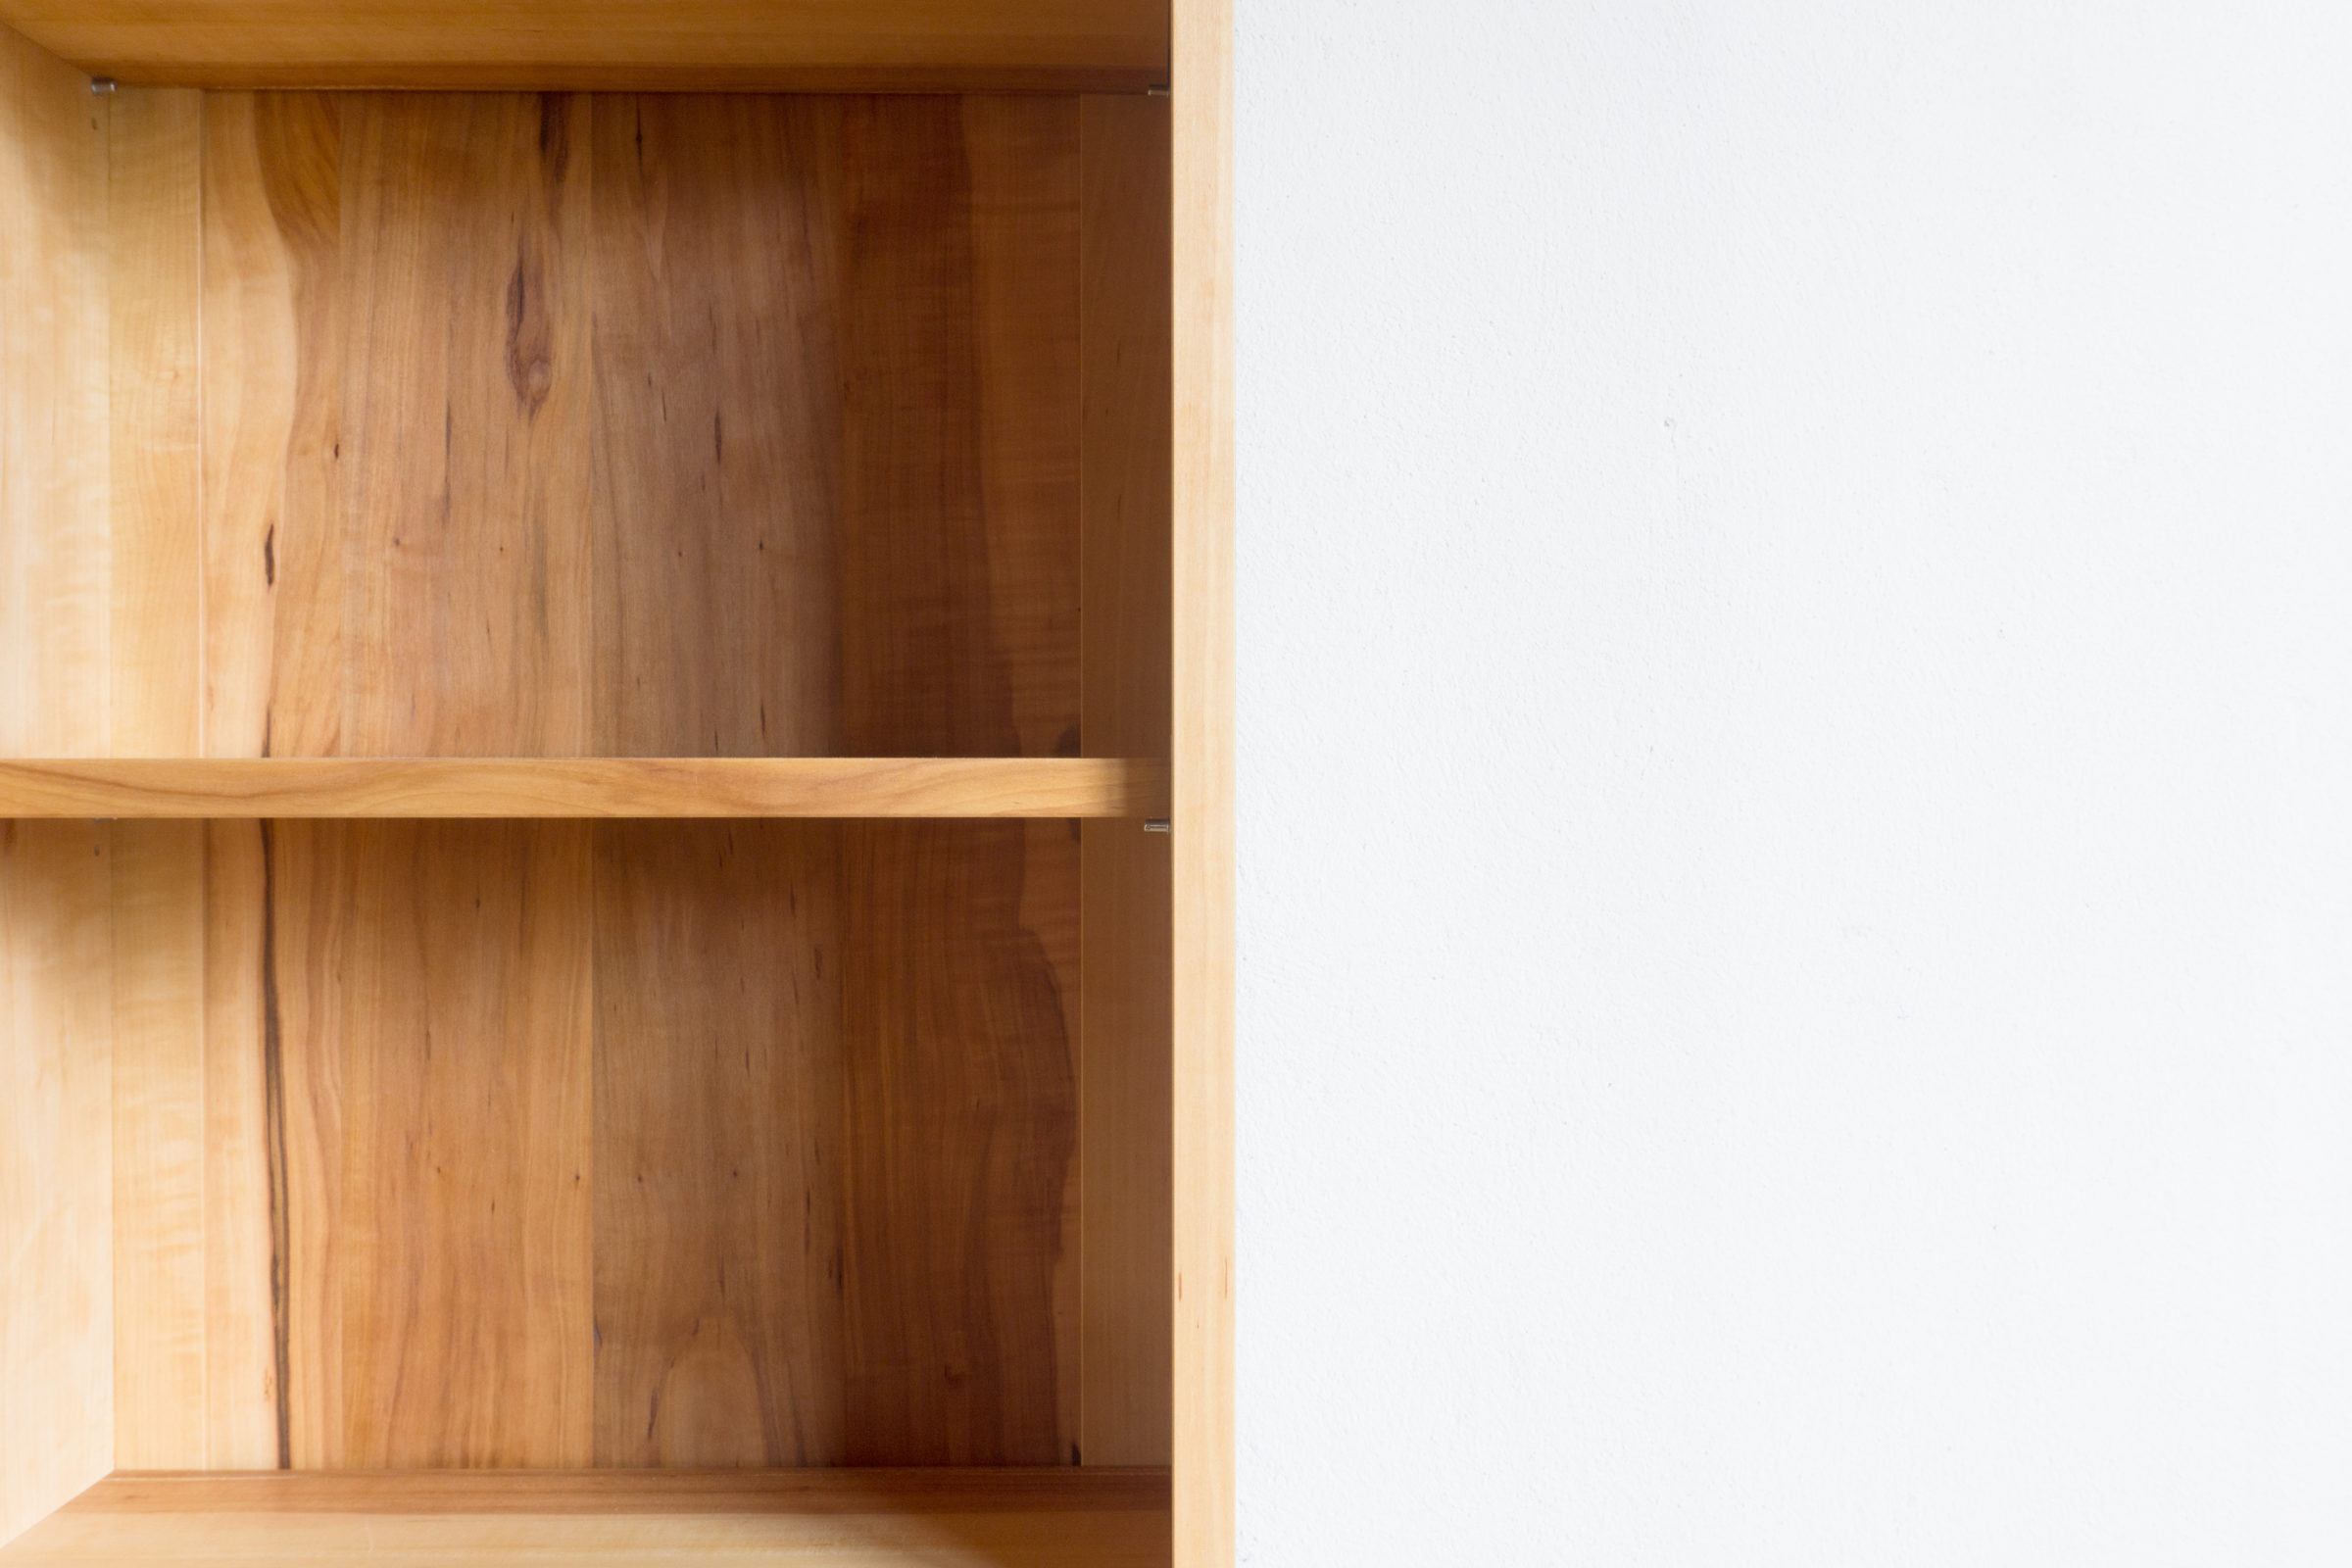 Kleiner Bücherkasten, Massivholzmöbel handgemacht, Hochwertige Möbel aus Massivholz, Holzoberflächen handgehobelt, Einzelmöbelstücke, The Trees of Lif